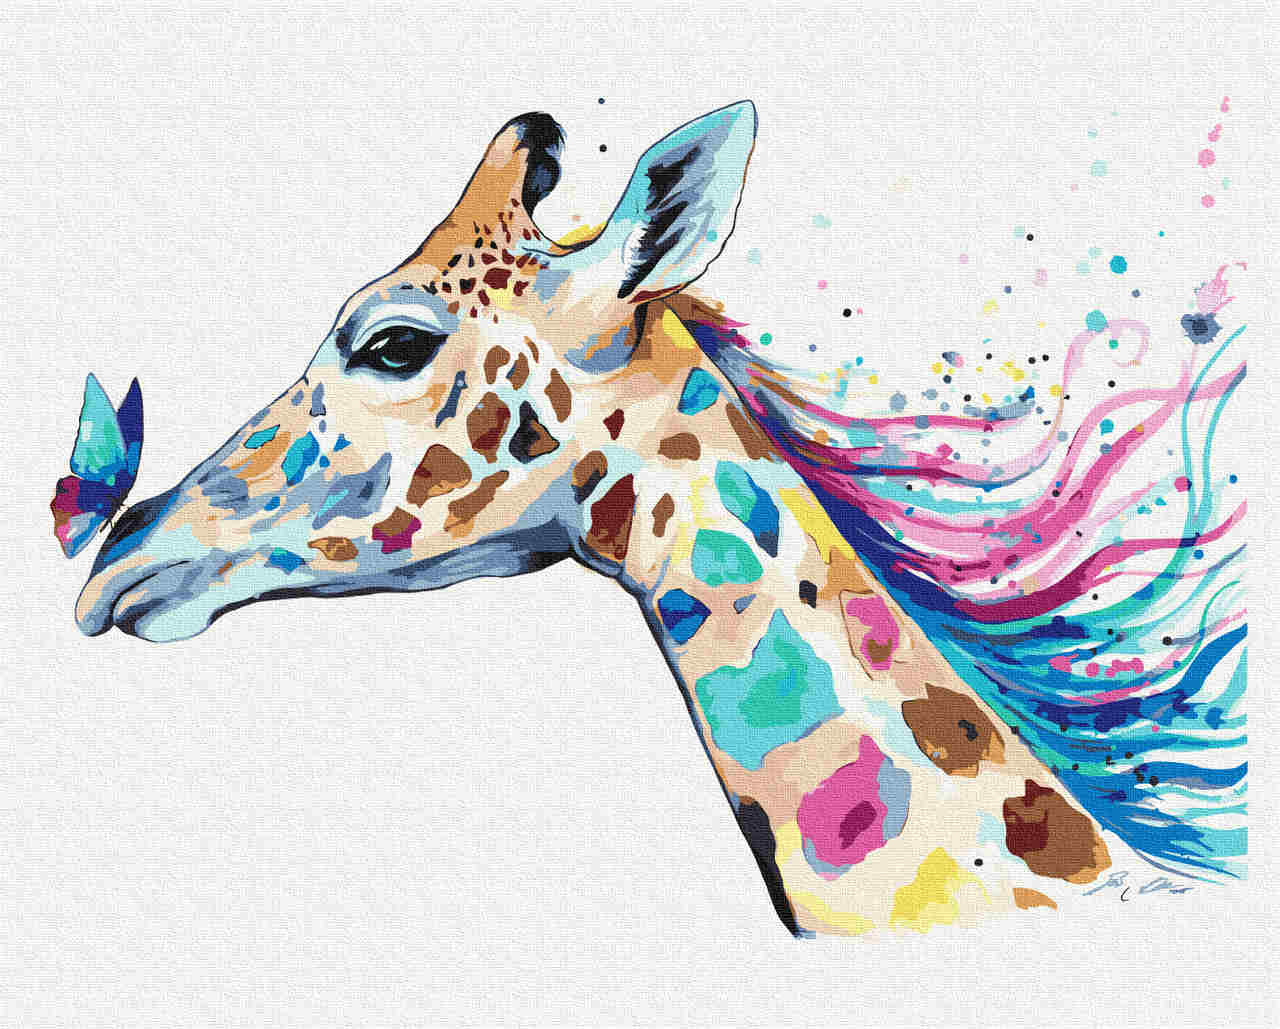 Malen nach Zahlen - Giraffe - by Pixie Cold, mit Rahmen von Pixie Cold